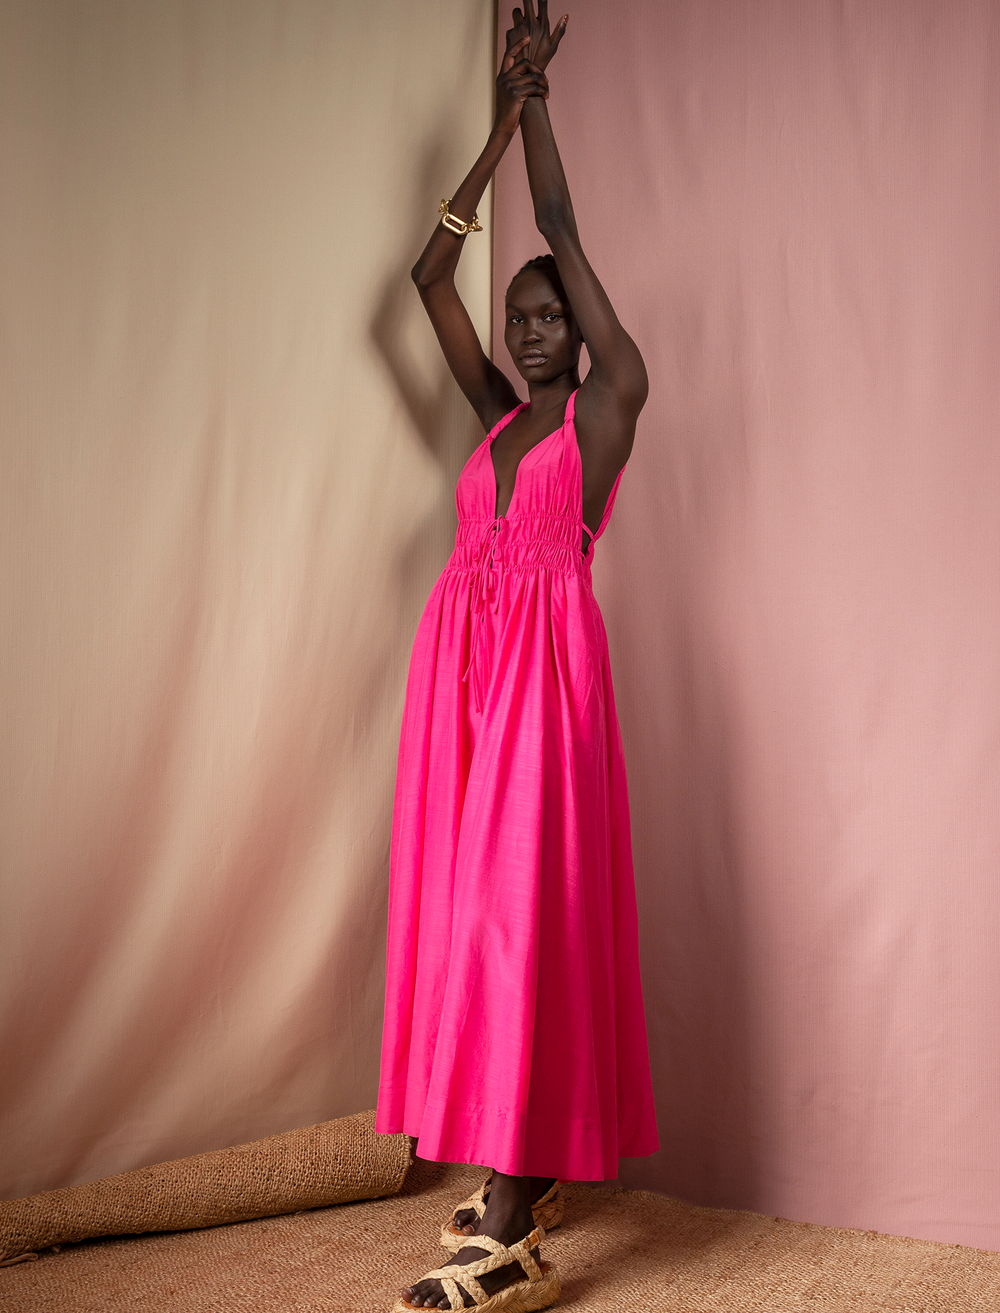 Tied Up Full Length Dress - Raspberry | Sunset Lover